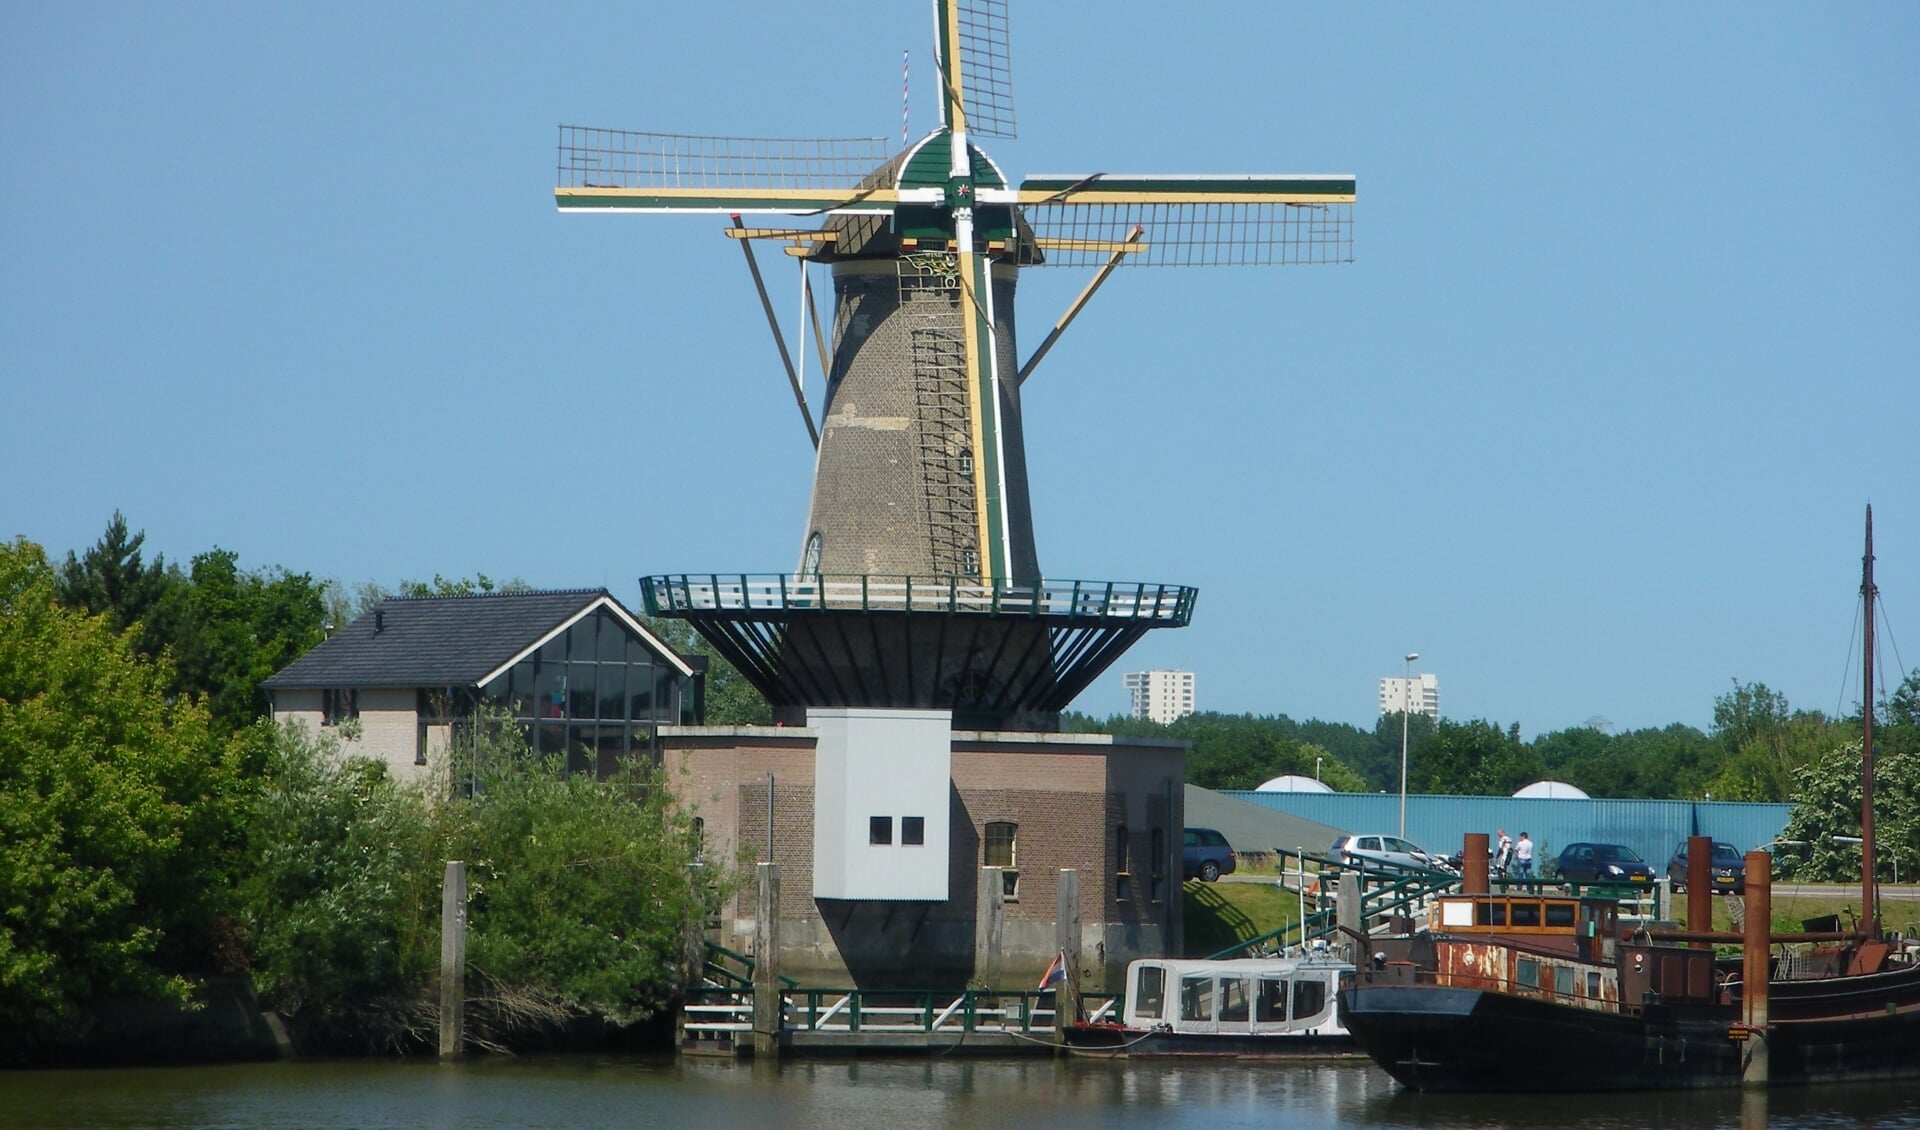 De leefomgeving van de molen, ook een 'echt stukje Nieuwerkerk' wordt in de plannen opgenomen. Rien Maaskant bepleitte dat. (foto: Hans de Kroon)